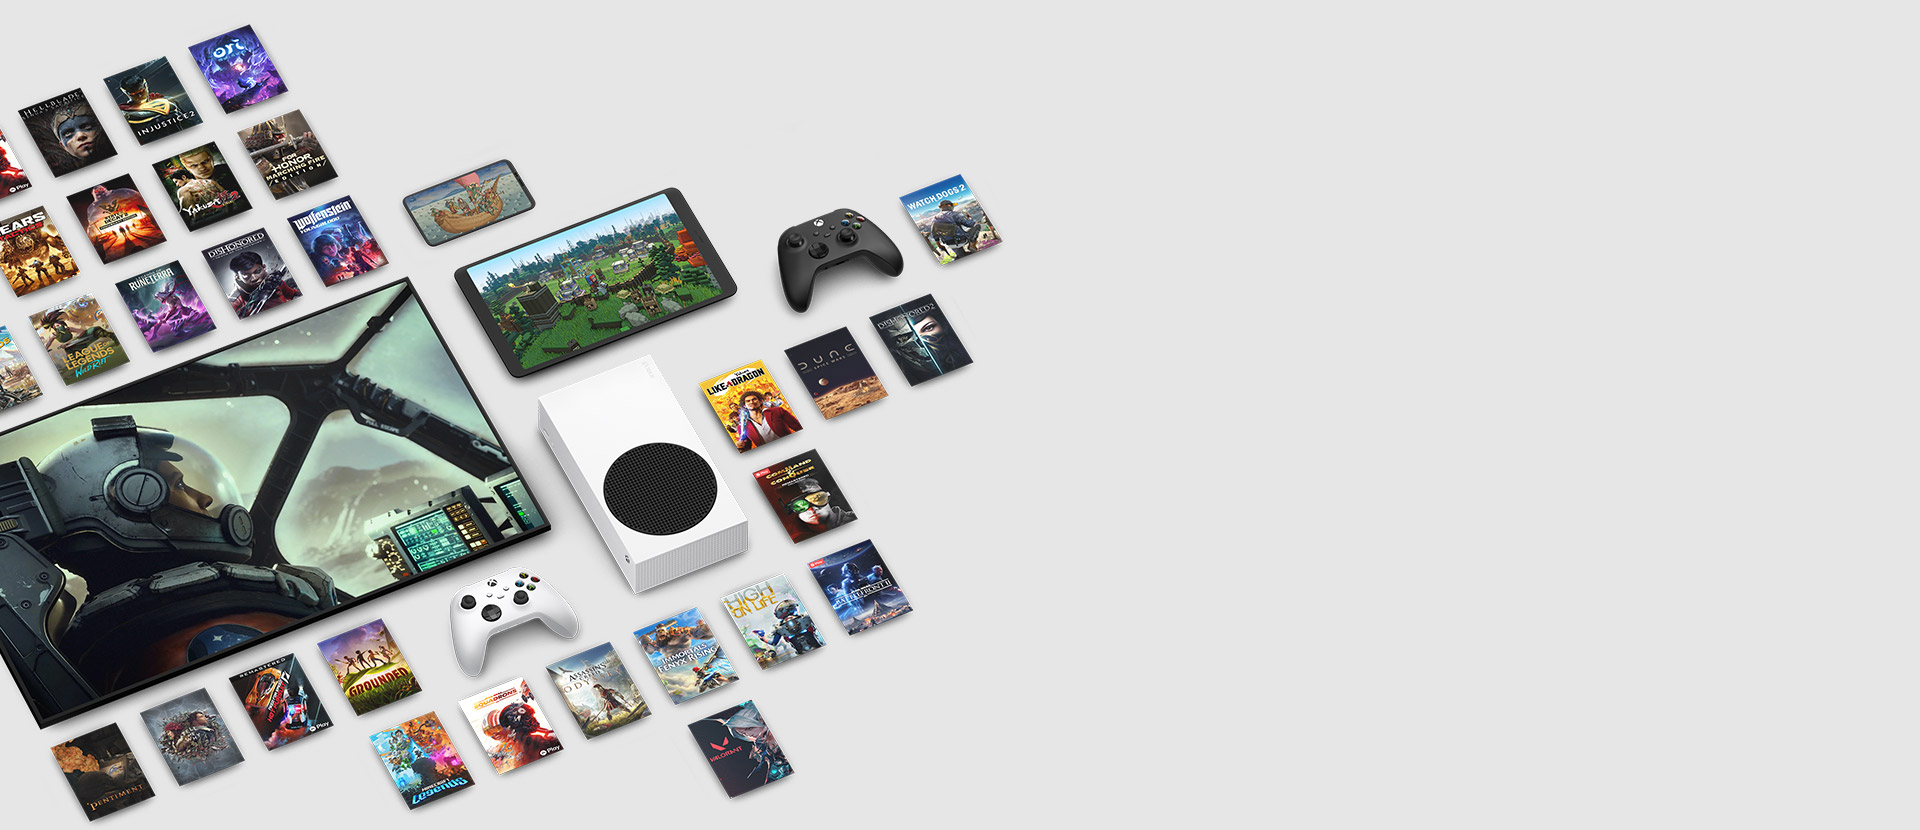 Şimdi Xbox Game Pass Ultimate ile erişilebilen birden fazla oyundan oyun resimleri; konsol, cep telefonu, tablet, akıllı televizyon ve oyun kumandaları dahil olmak üzere birden fazla cihazı çevreliyor.